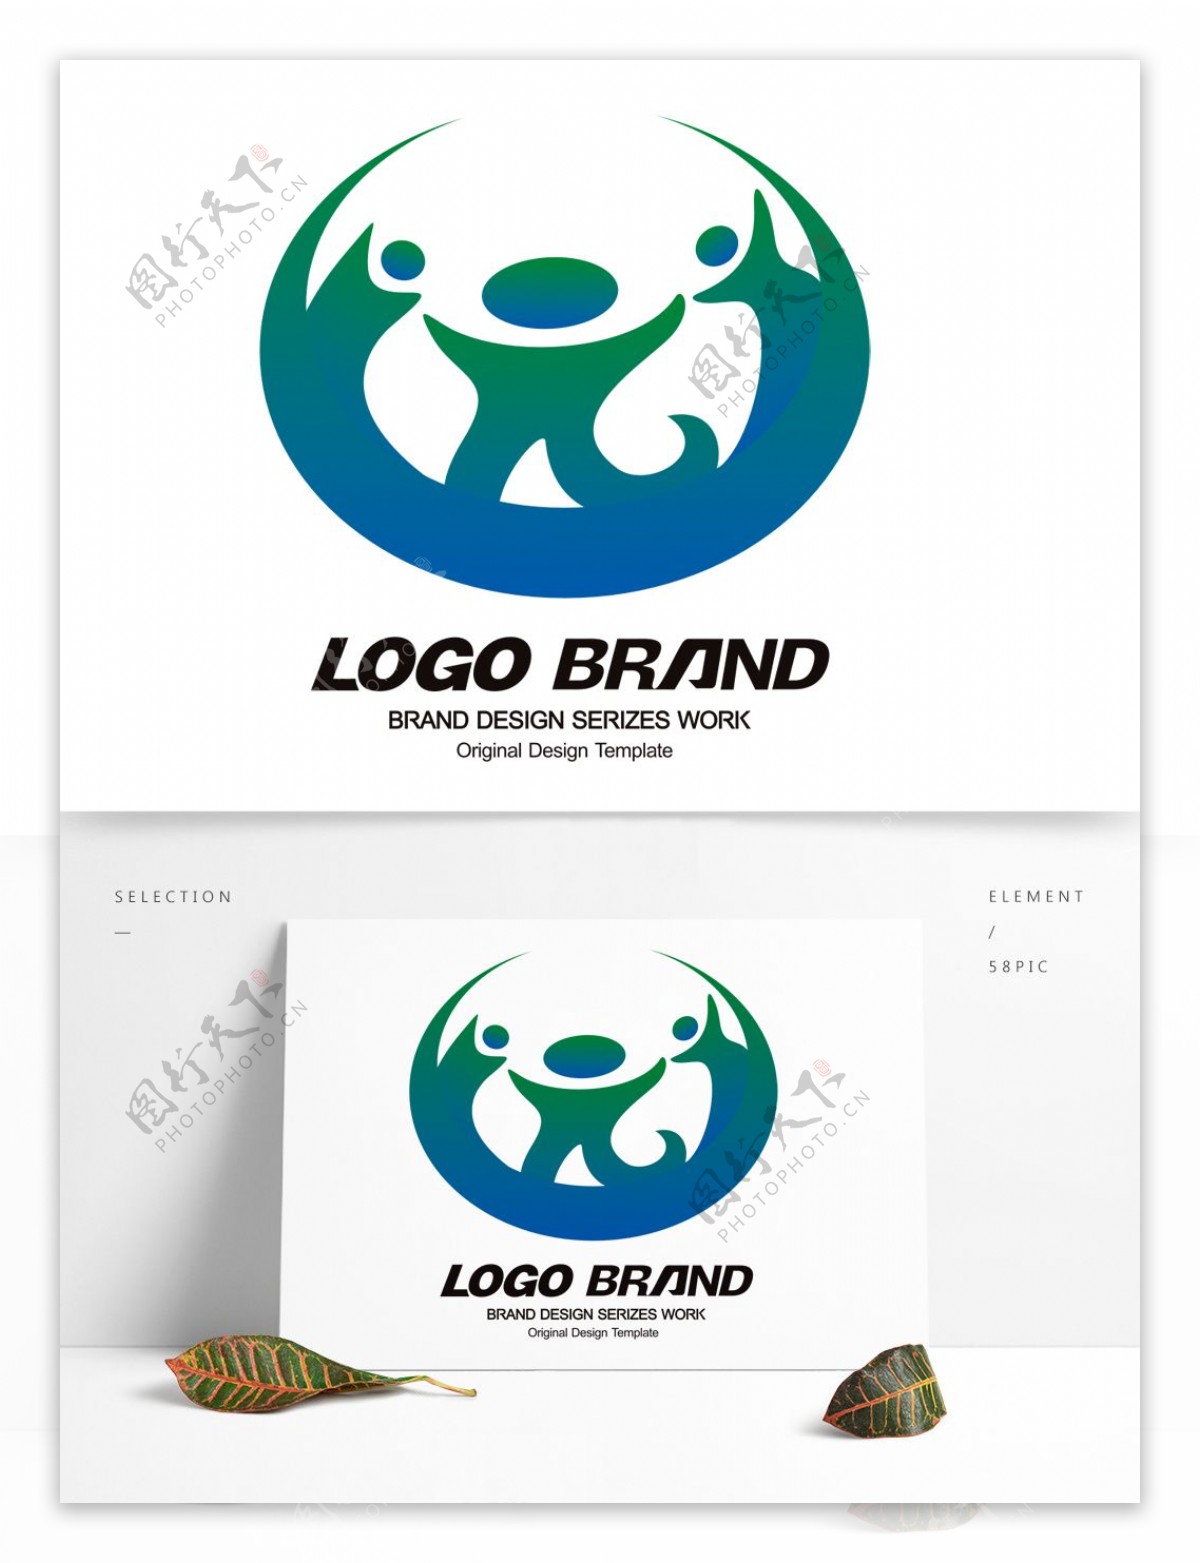 创意矢量蓝绿人形旅游LOGO设计公司标志